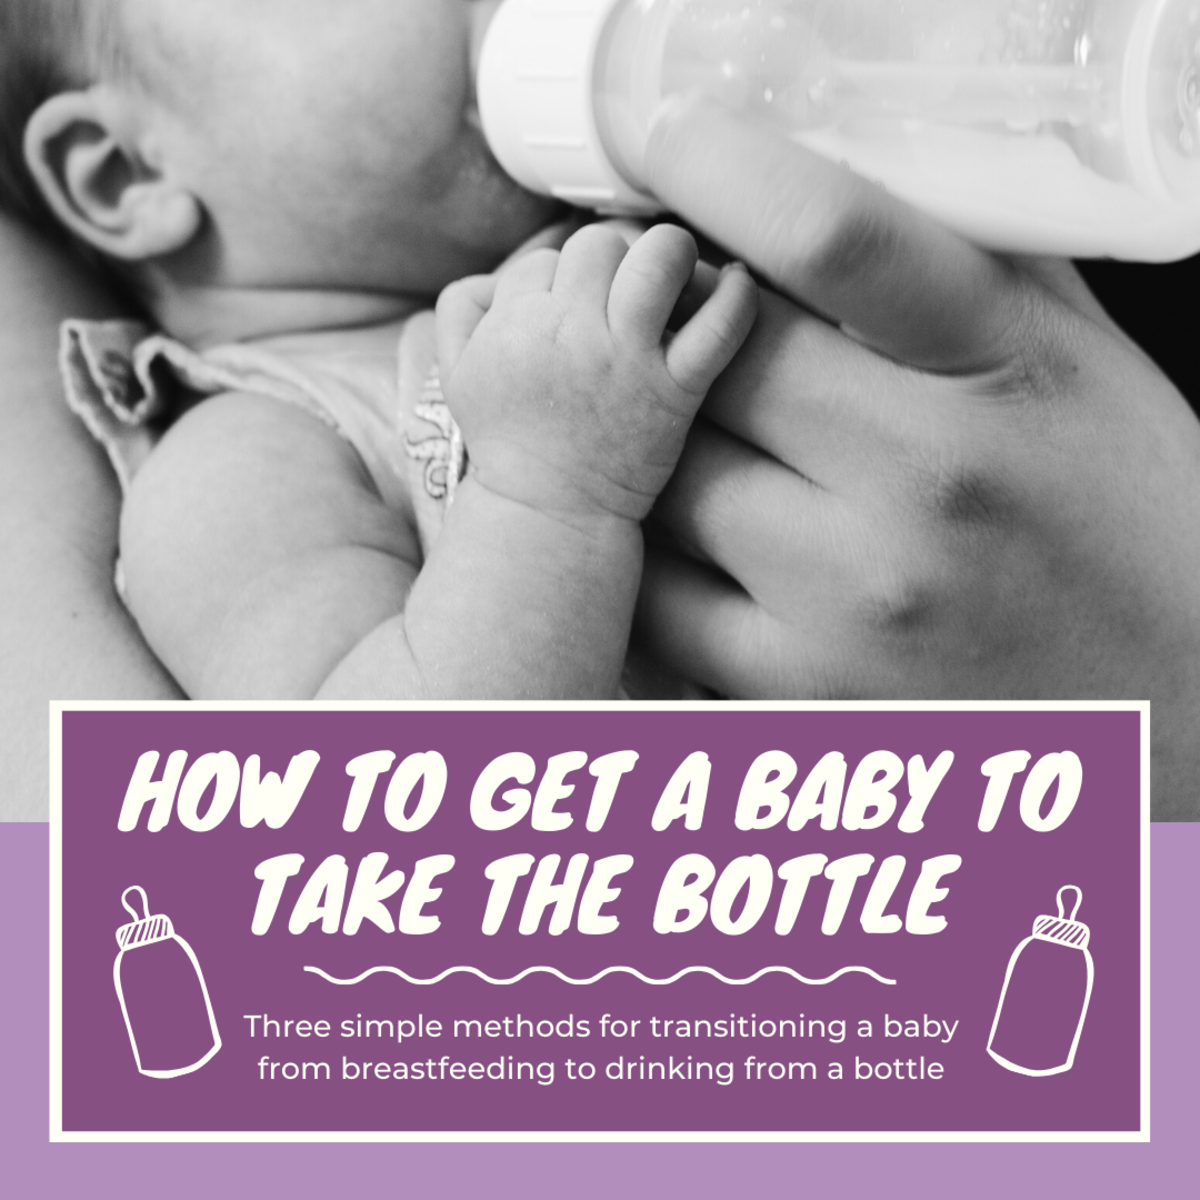 breastfed baby refusing bottle